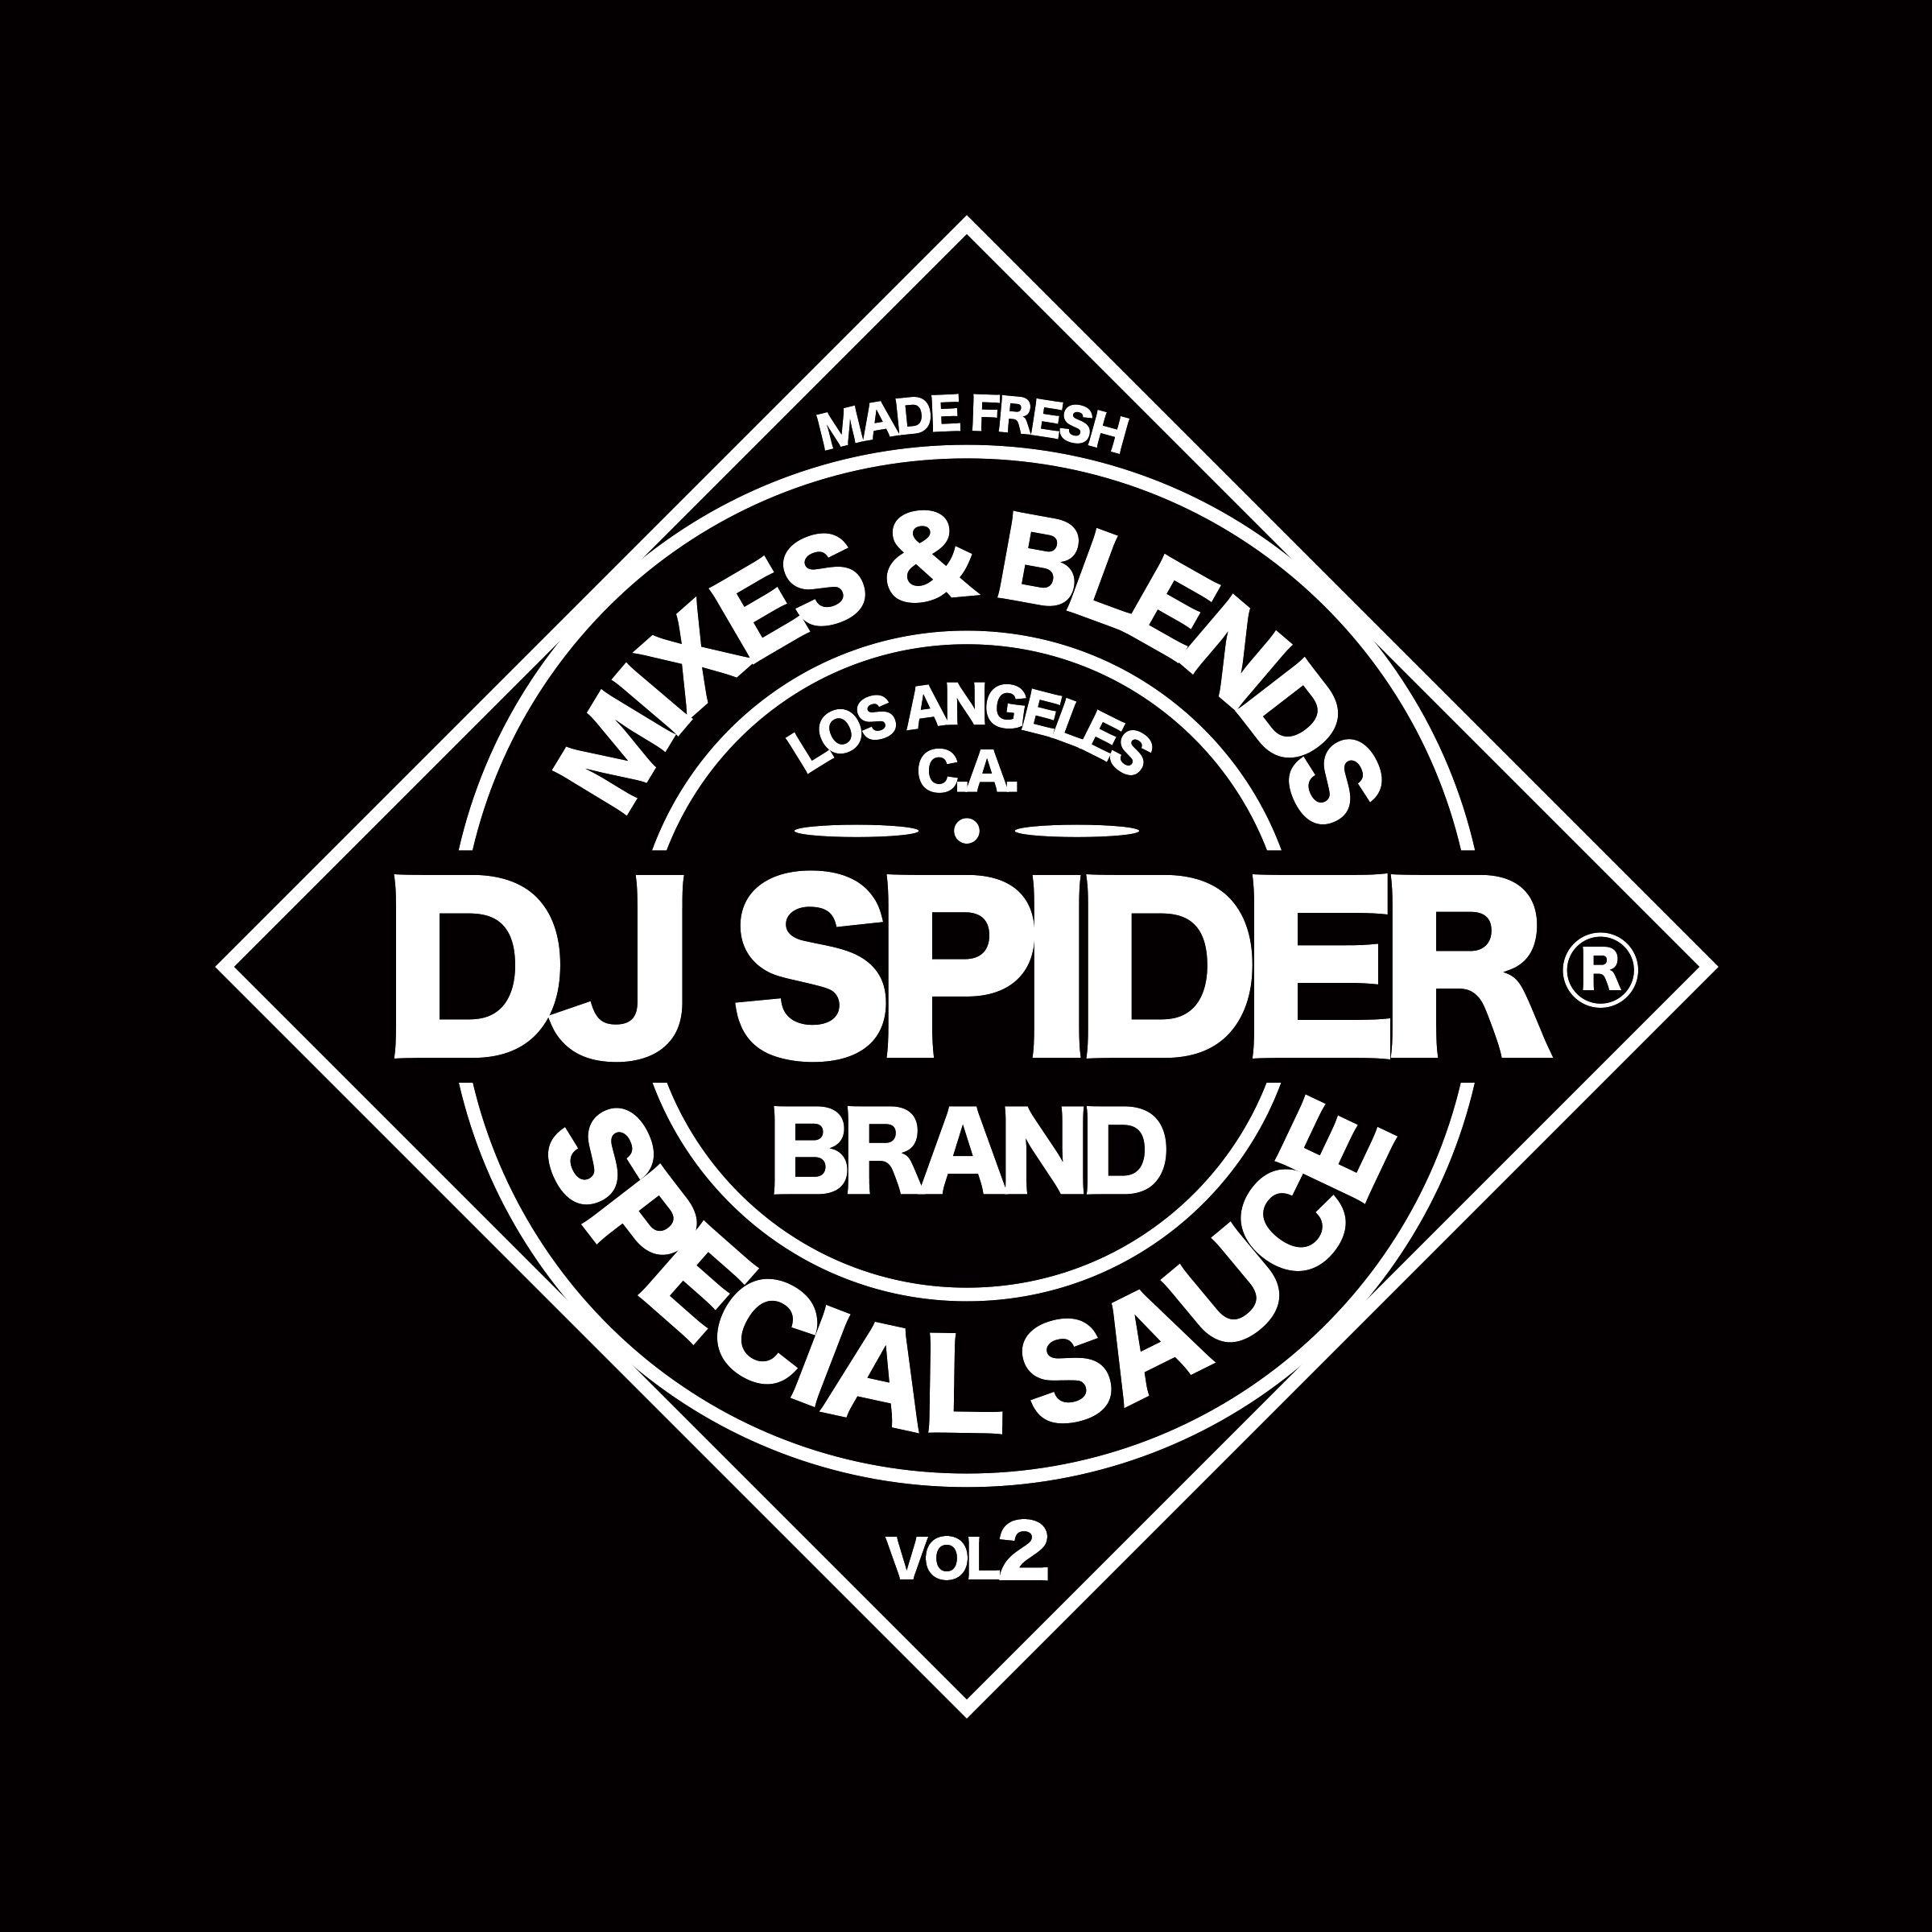 Spider -Man 2 Logo - DJ Spider